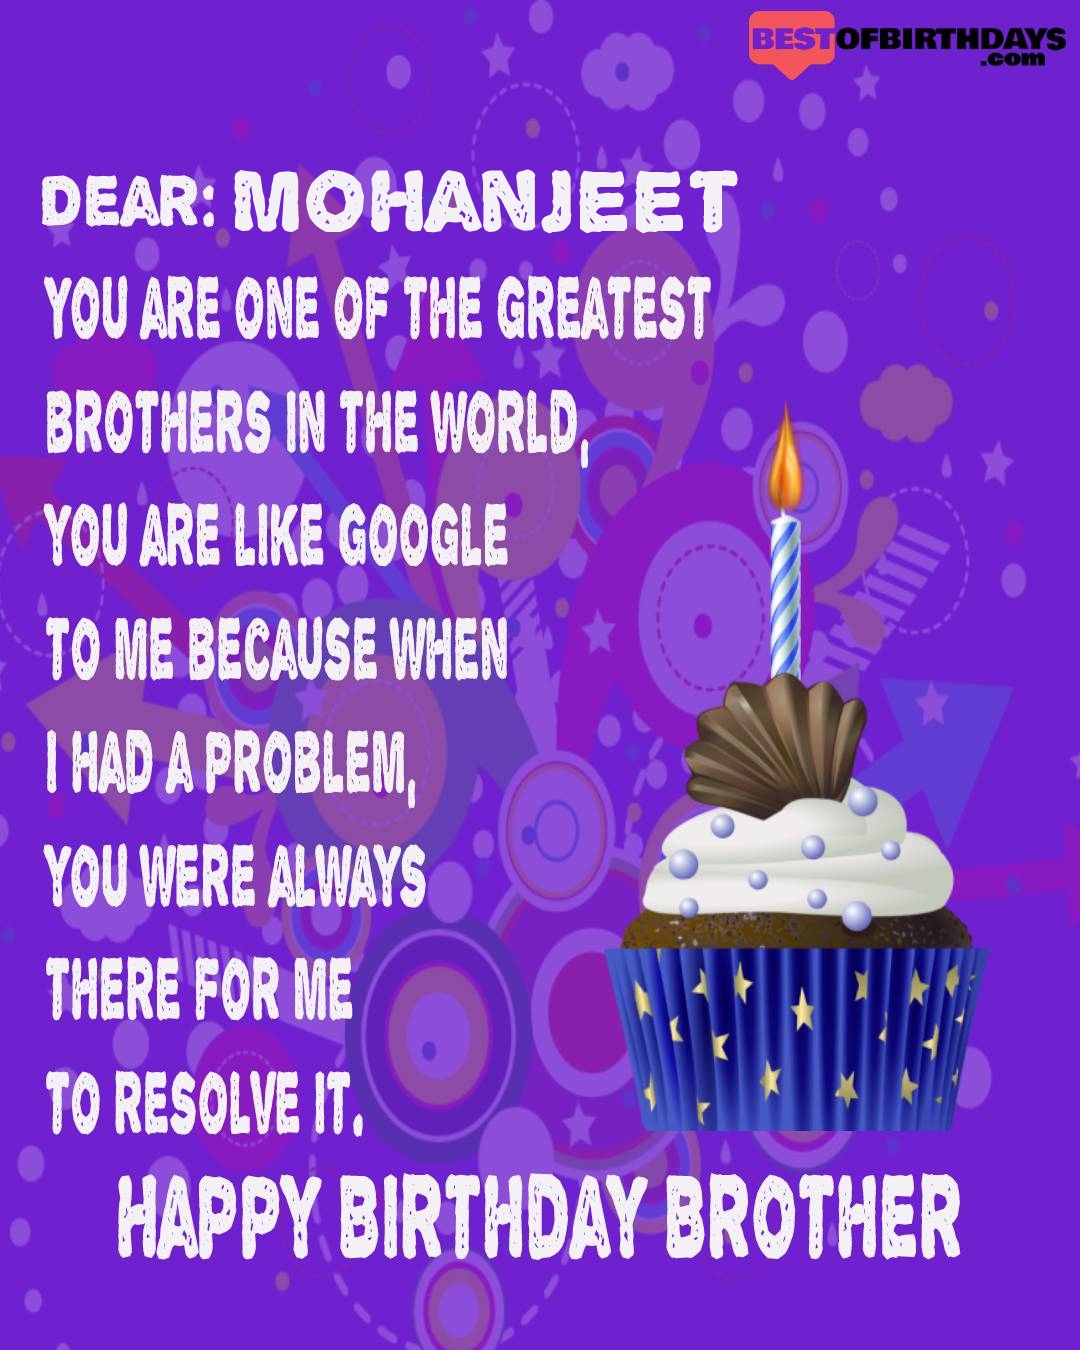 Happy birthday mohanjeet bhai brother bro